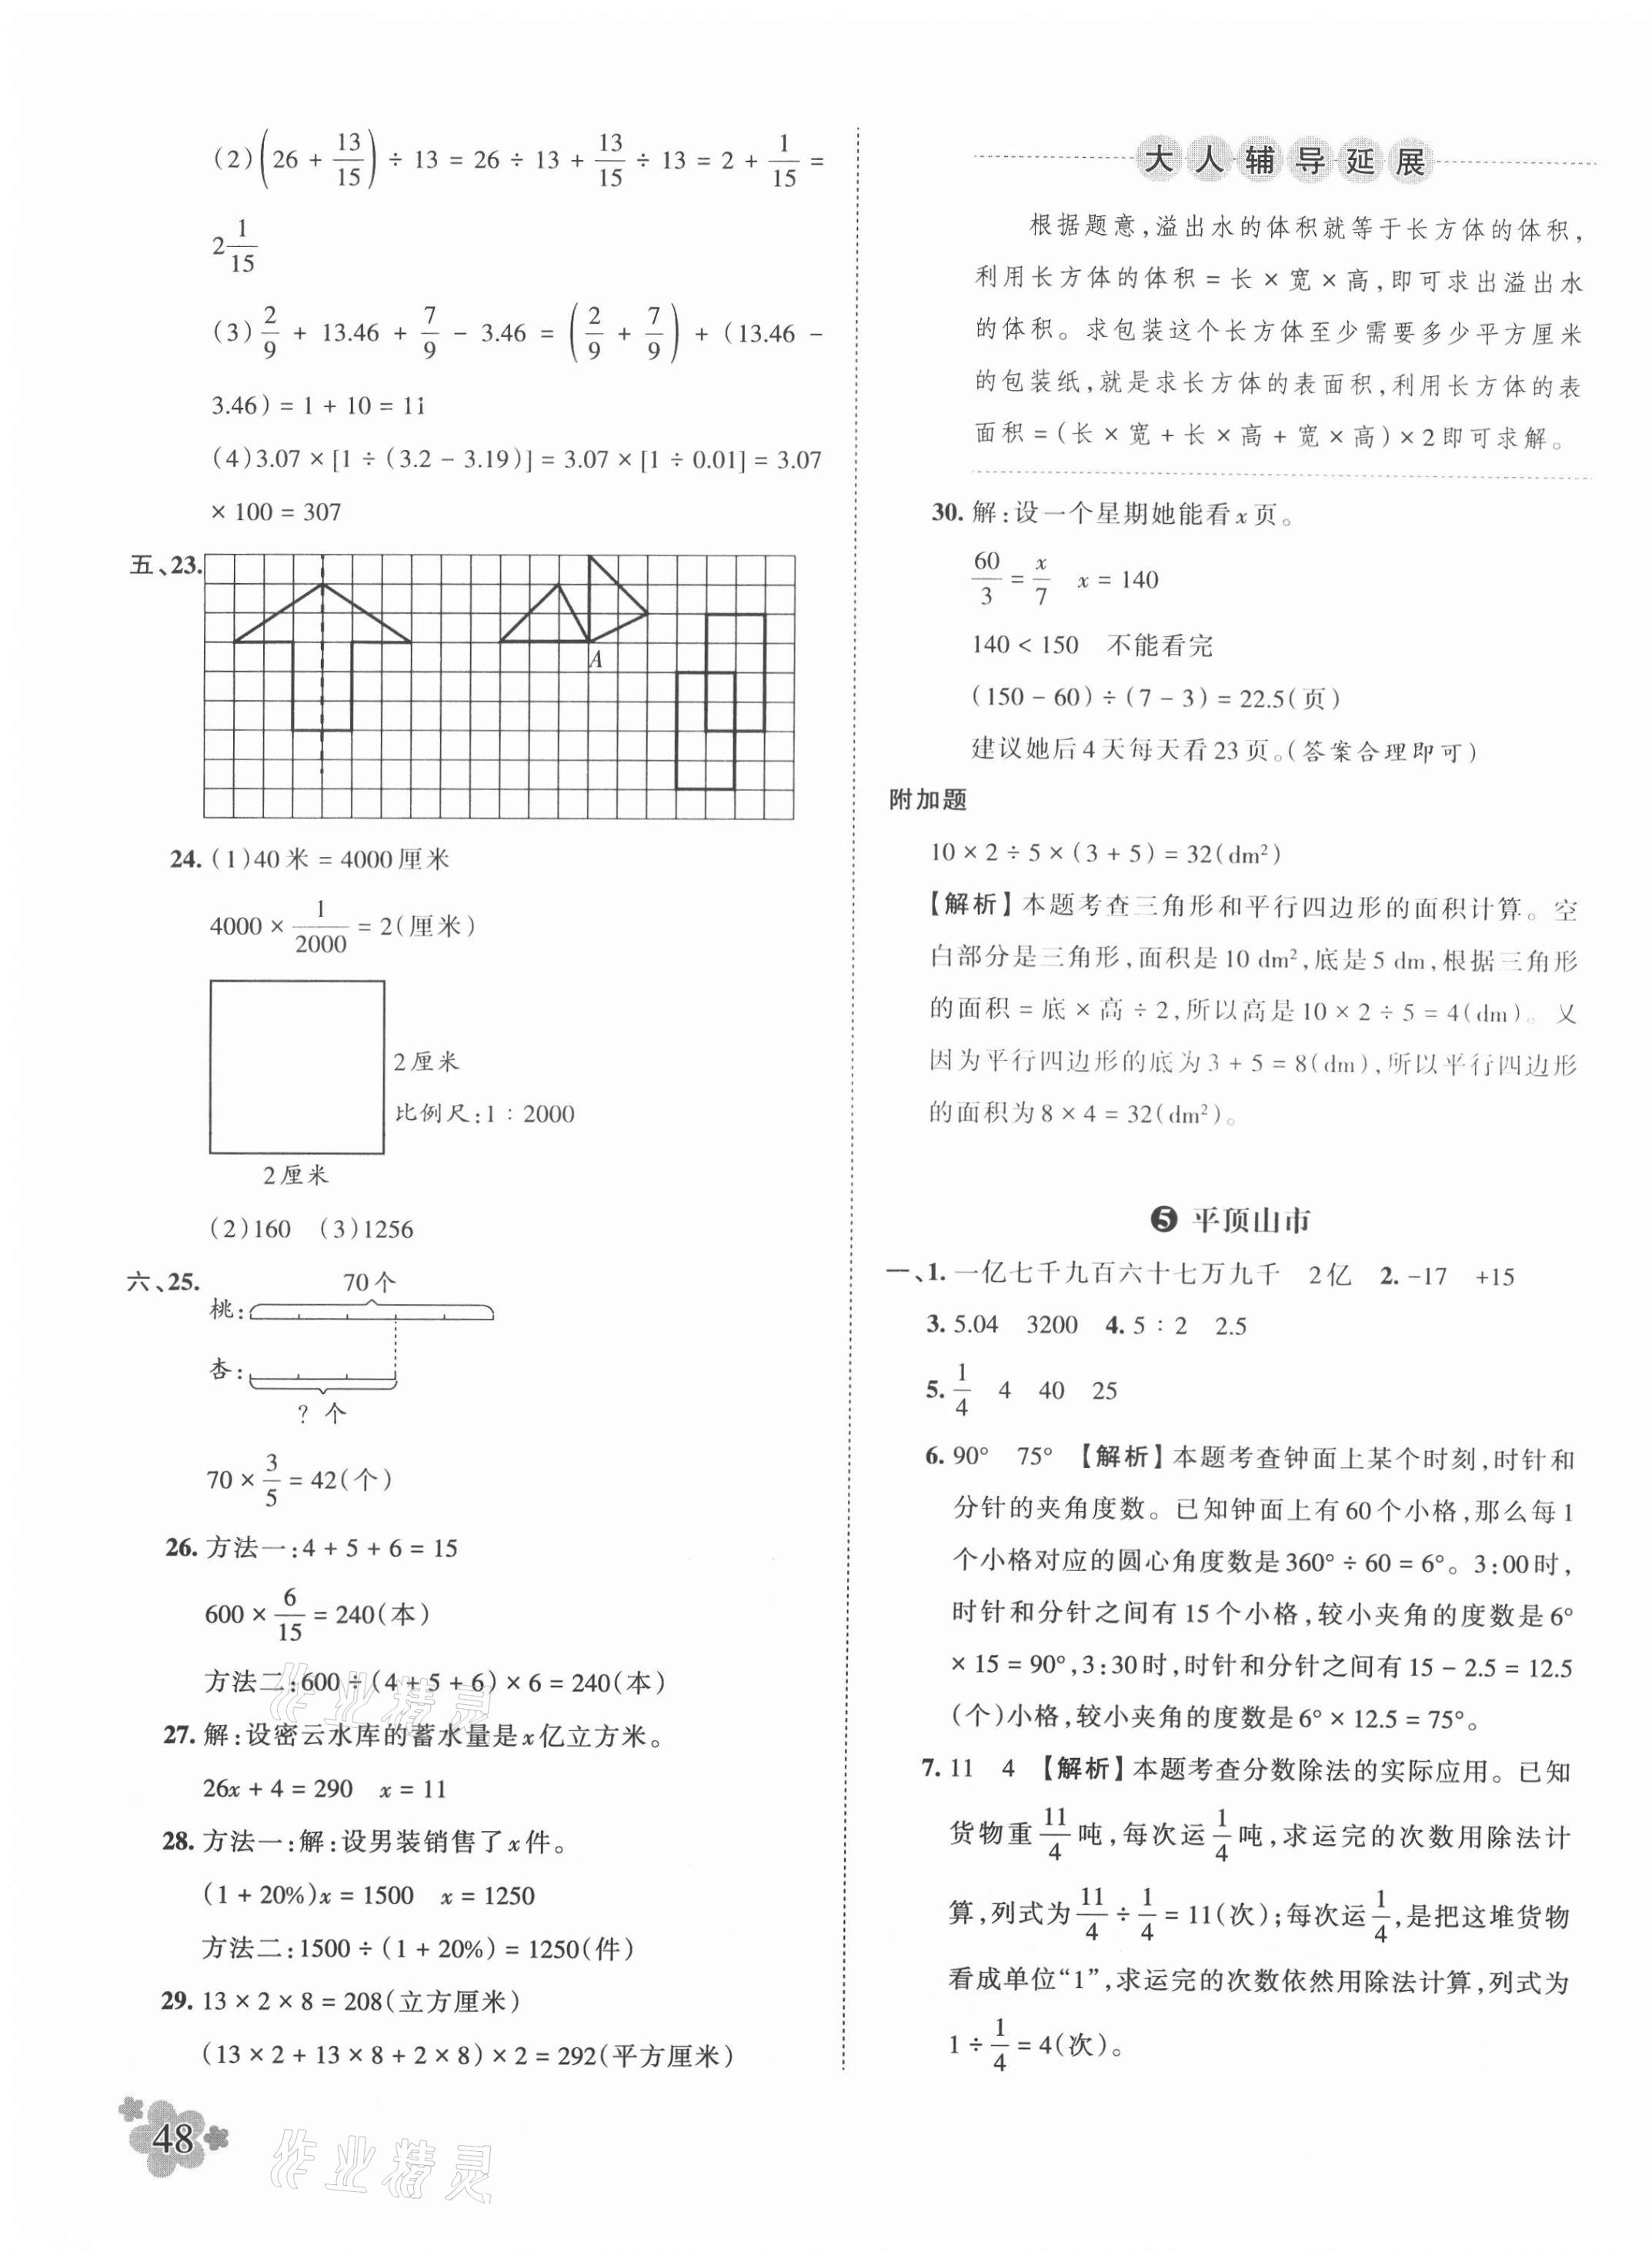 2021年王朝霞小升初重点校毕业升学及招生分班数学 第7页